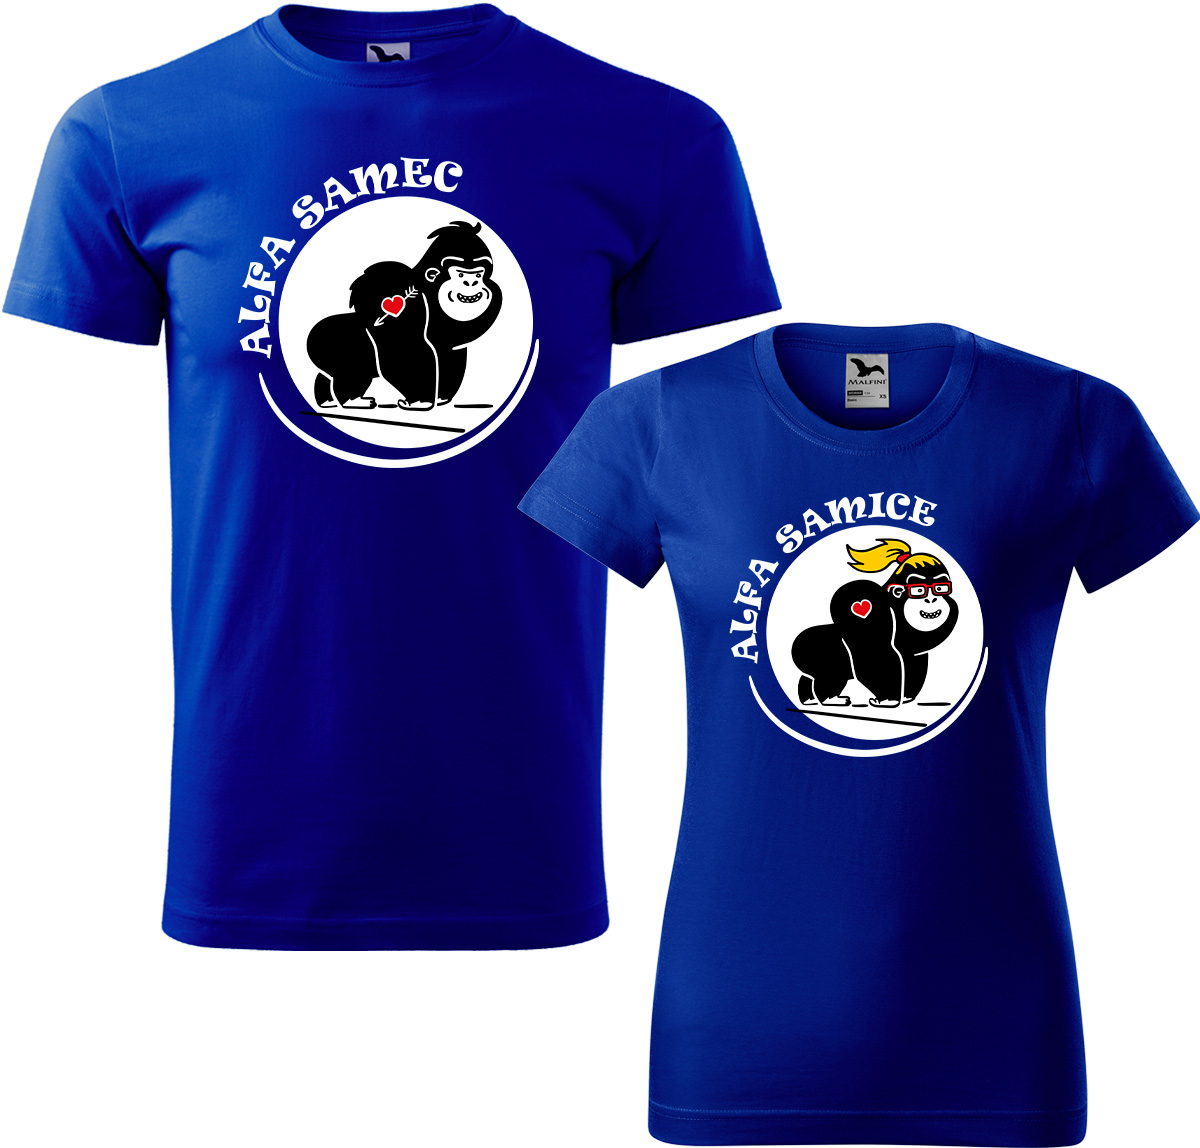 Trička pro páry - Alfa samec a alfa samice Barva: Královská modrá (05), Velikost dámské tričko: L, Velikost pánské tričko: L